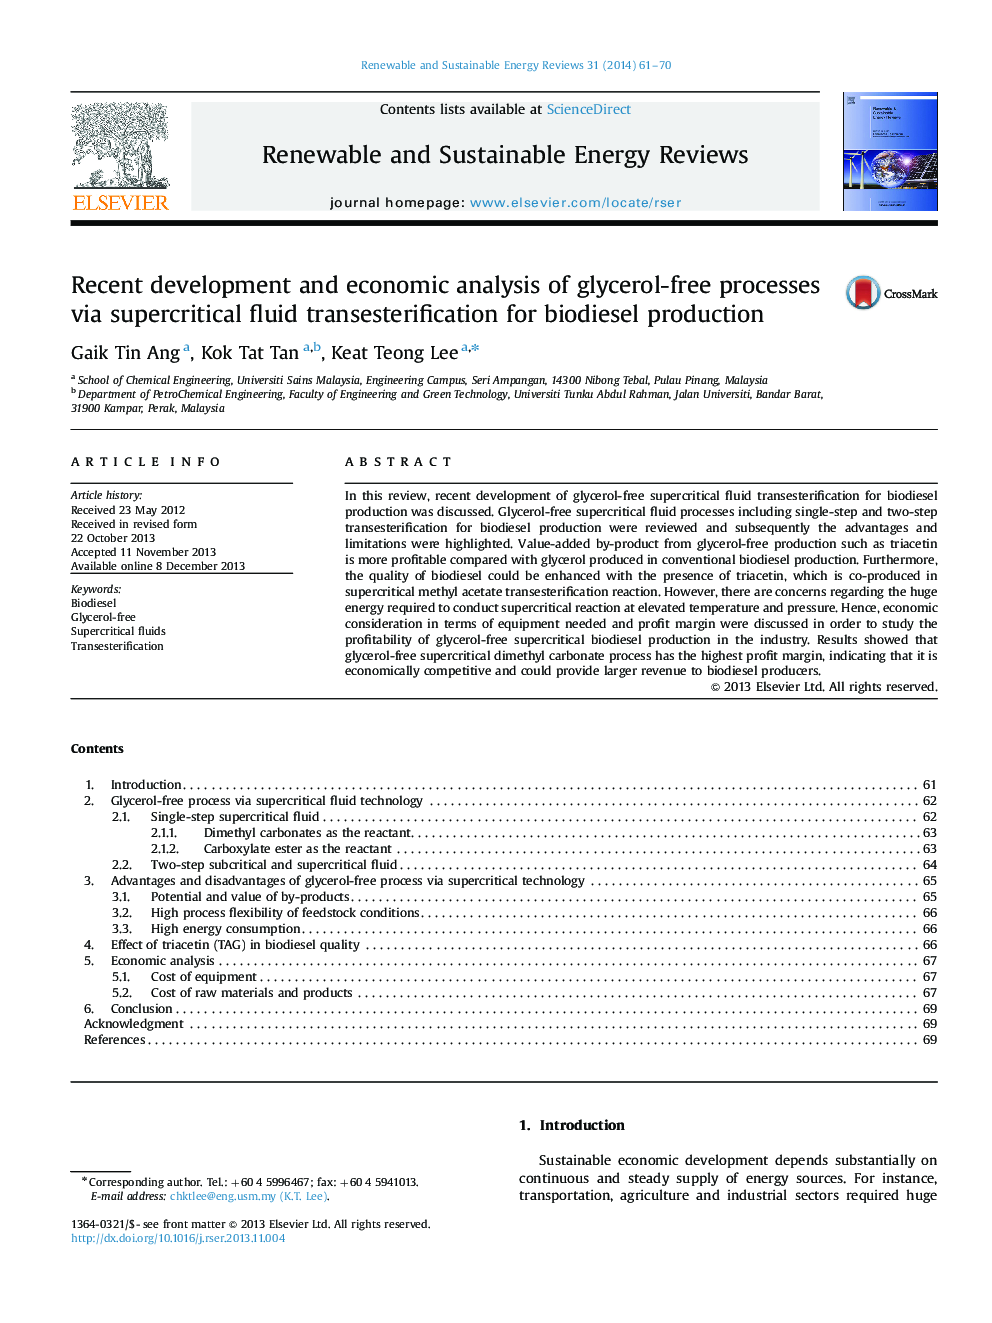 تجزیه و تحلیل اخیر و تجزیه و تحلیل اقتصادی فرآیندهای گلیسرول آزاد از طریق ترمیم اسیدهای سوپر کریتیسیت برای تولید بیودیزل 